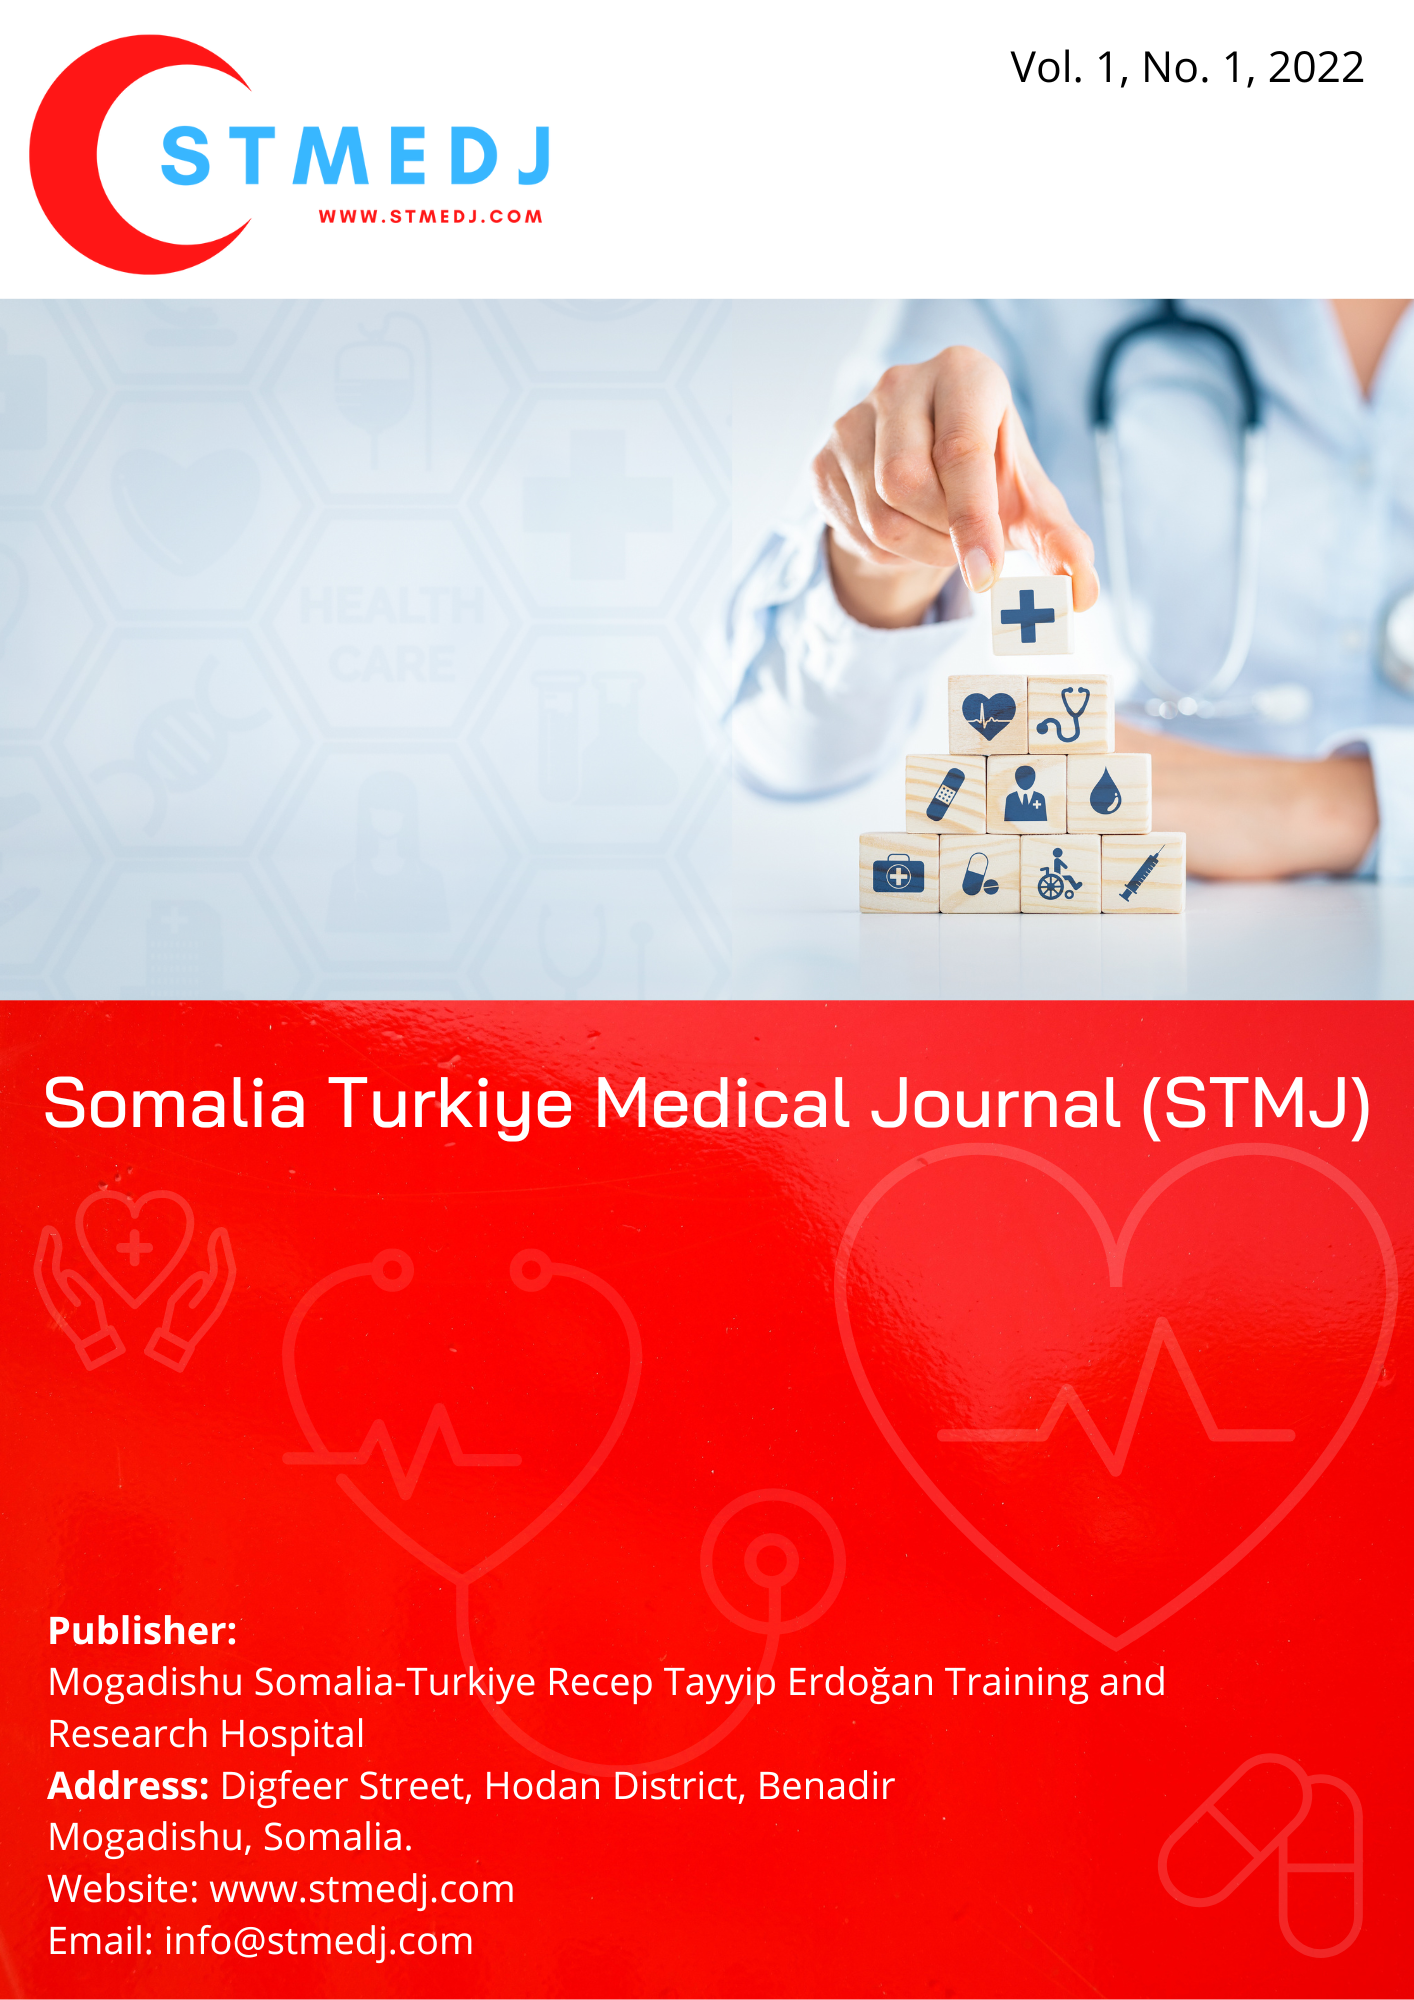 					View Vol. 1 No. 01 (2022): Somalia Turkiye Medical Journal (STMJ)
				